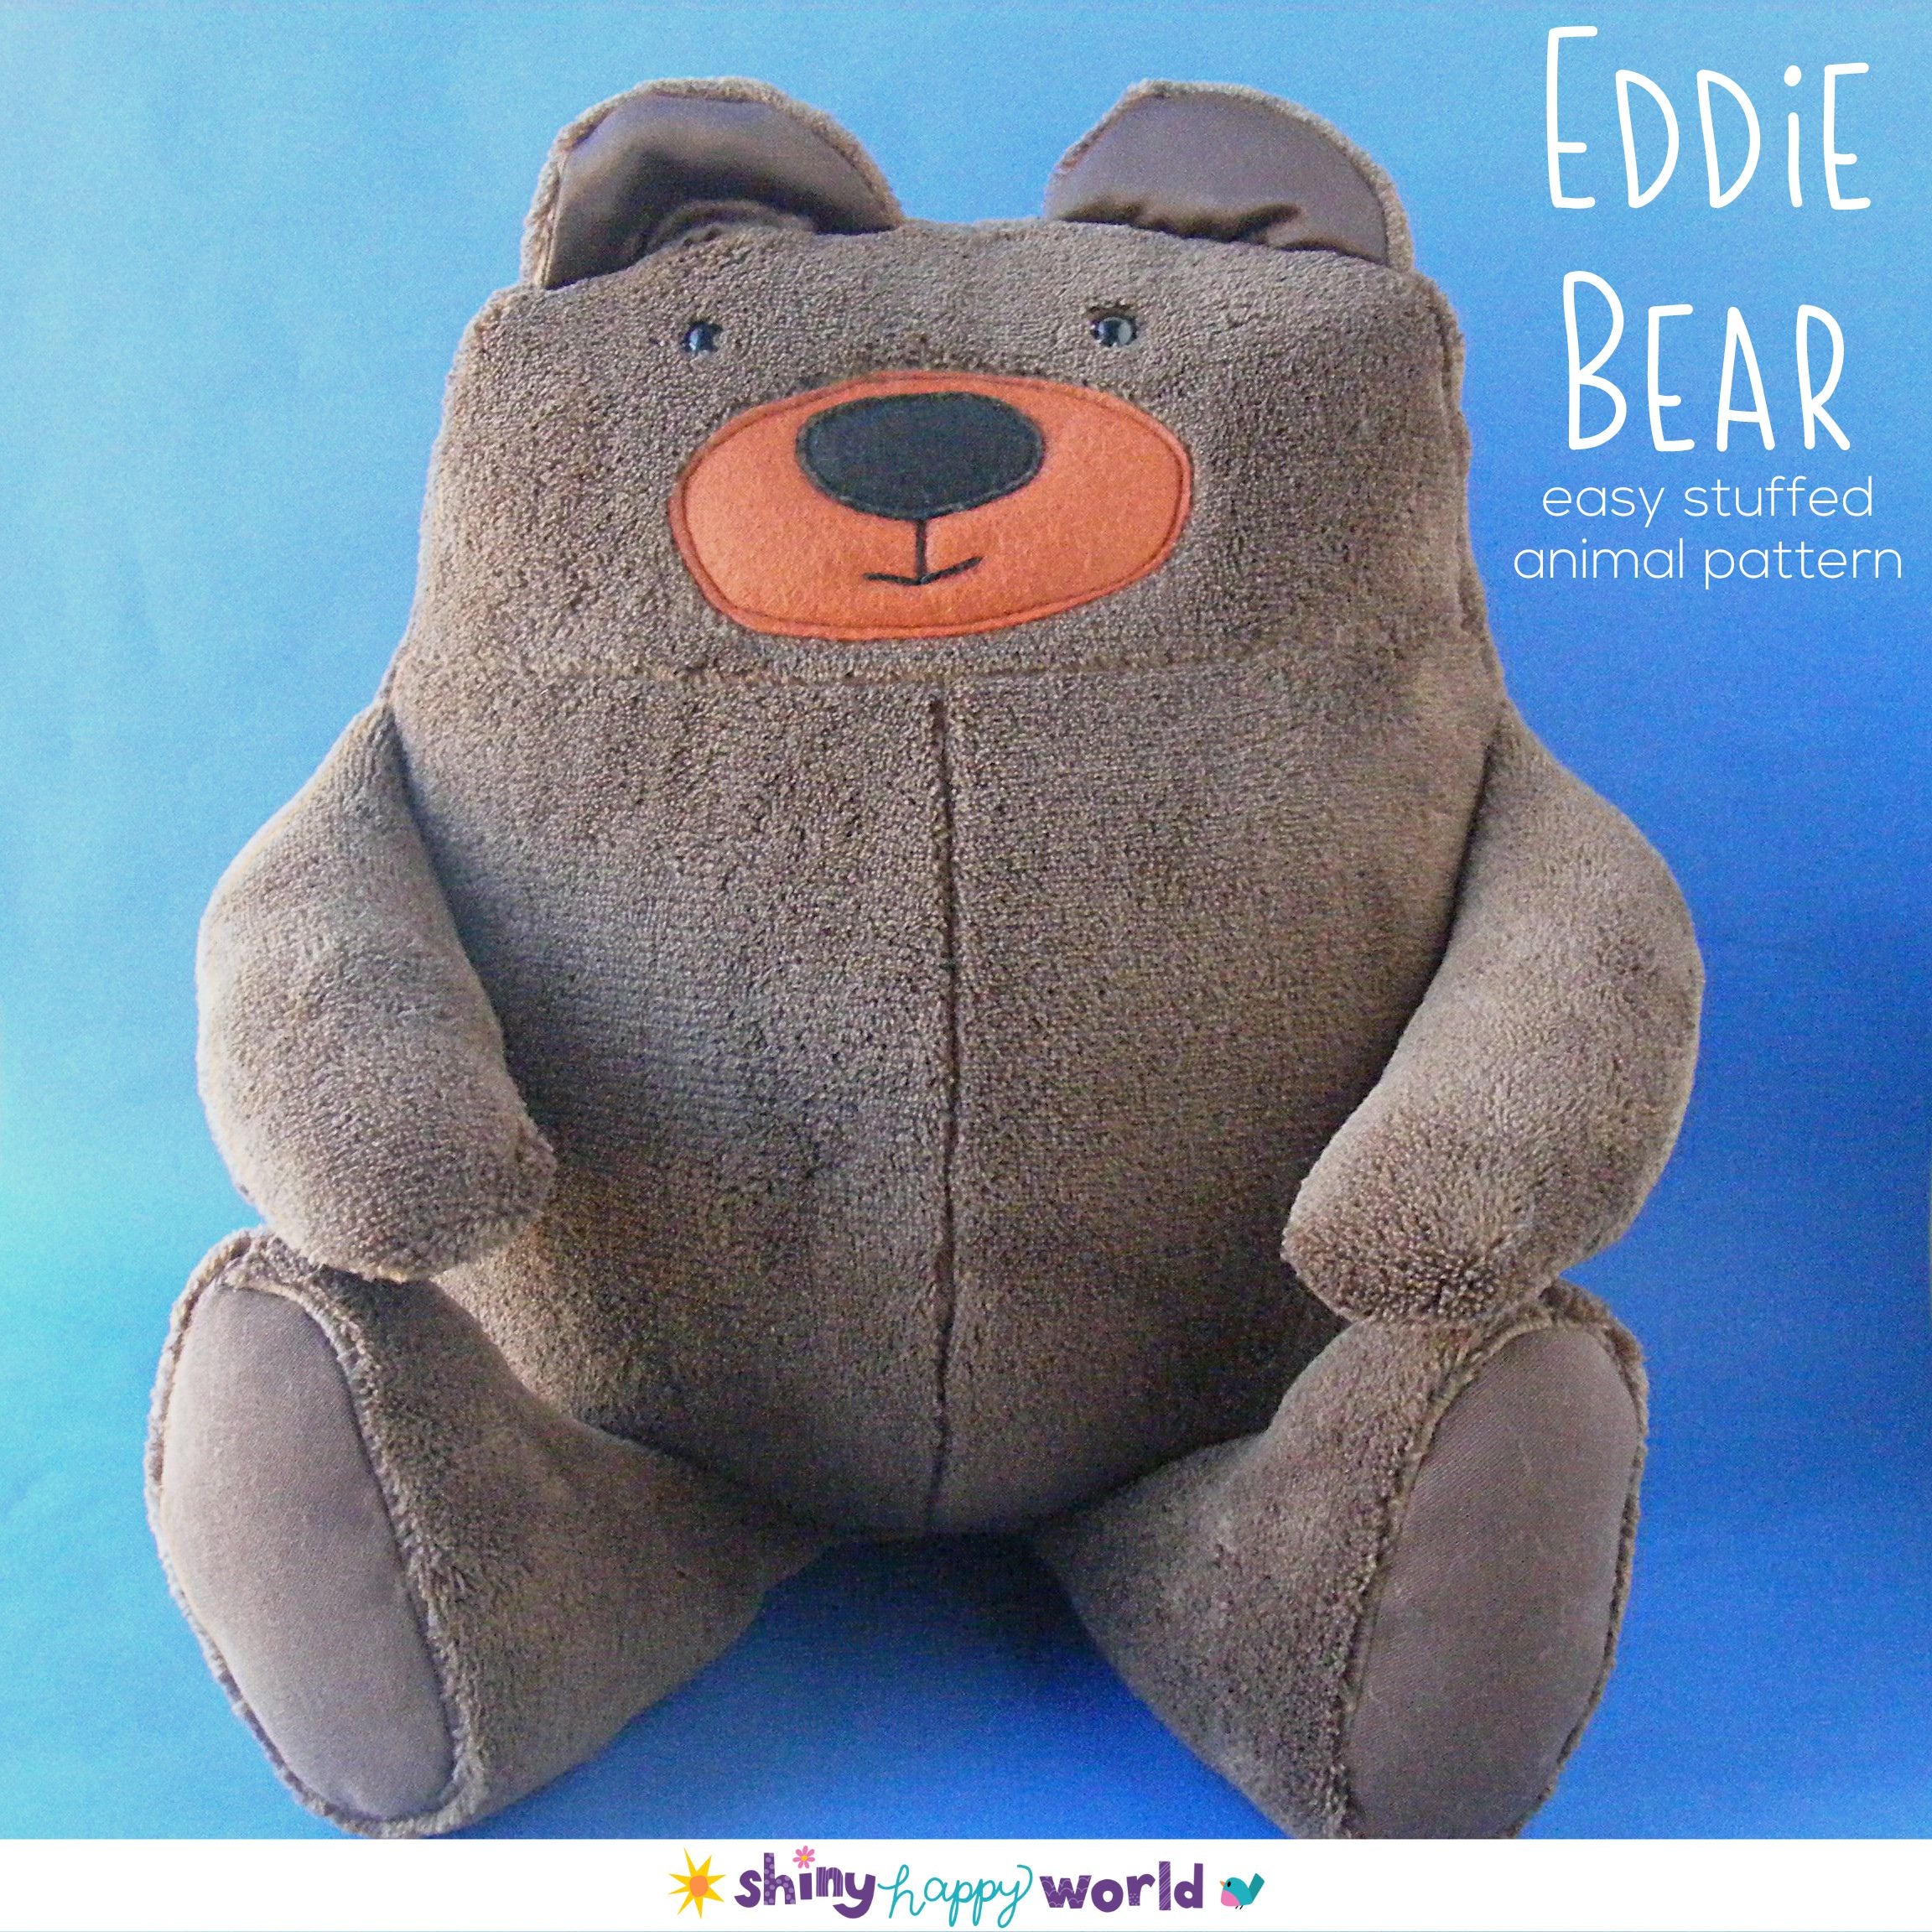 Eddie the Huggable Teddy Bear